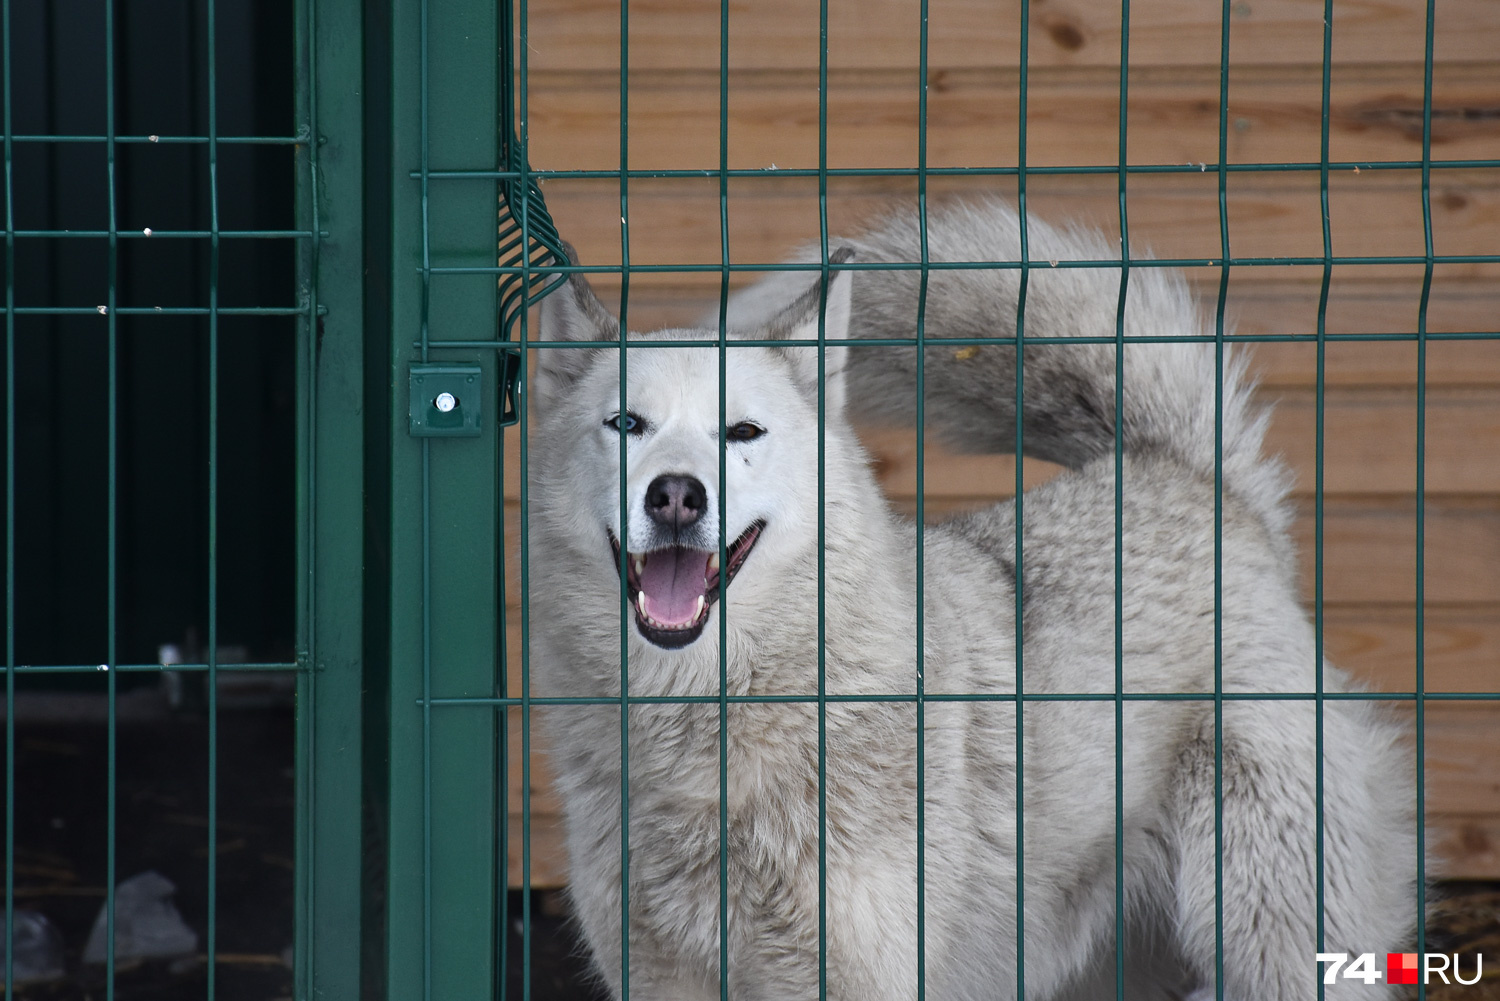 Этот улыбчивый пес с разными глазами похож на хаски, но ветеринары говорят — помесь